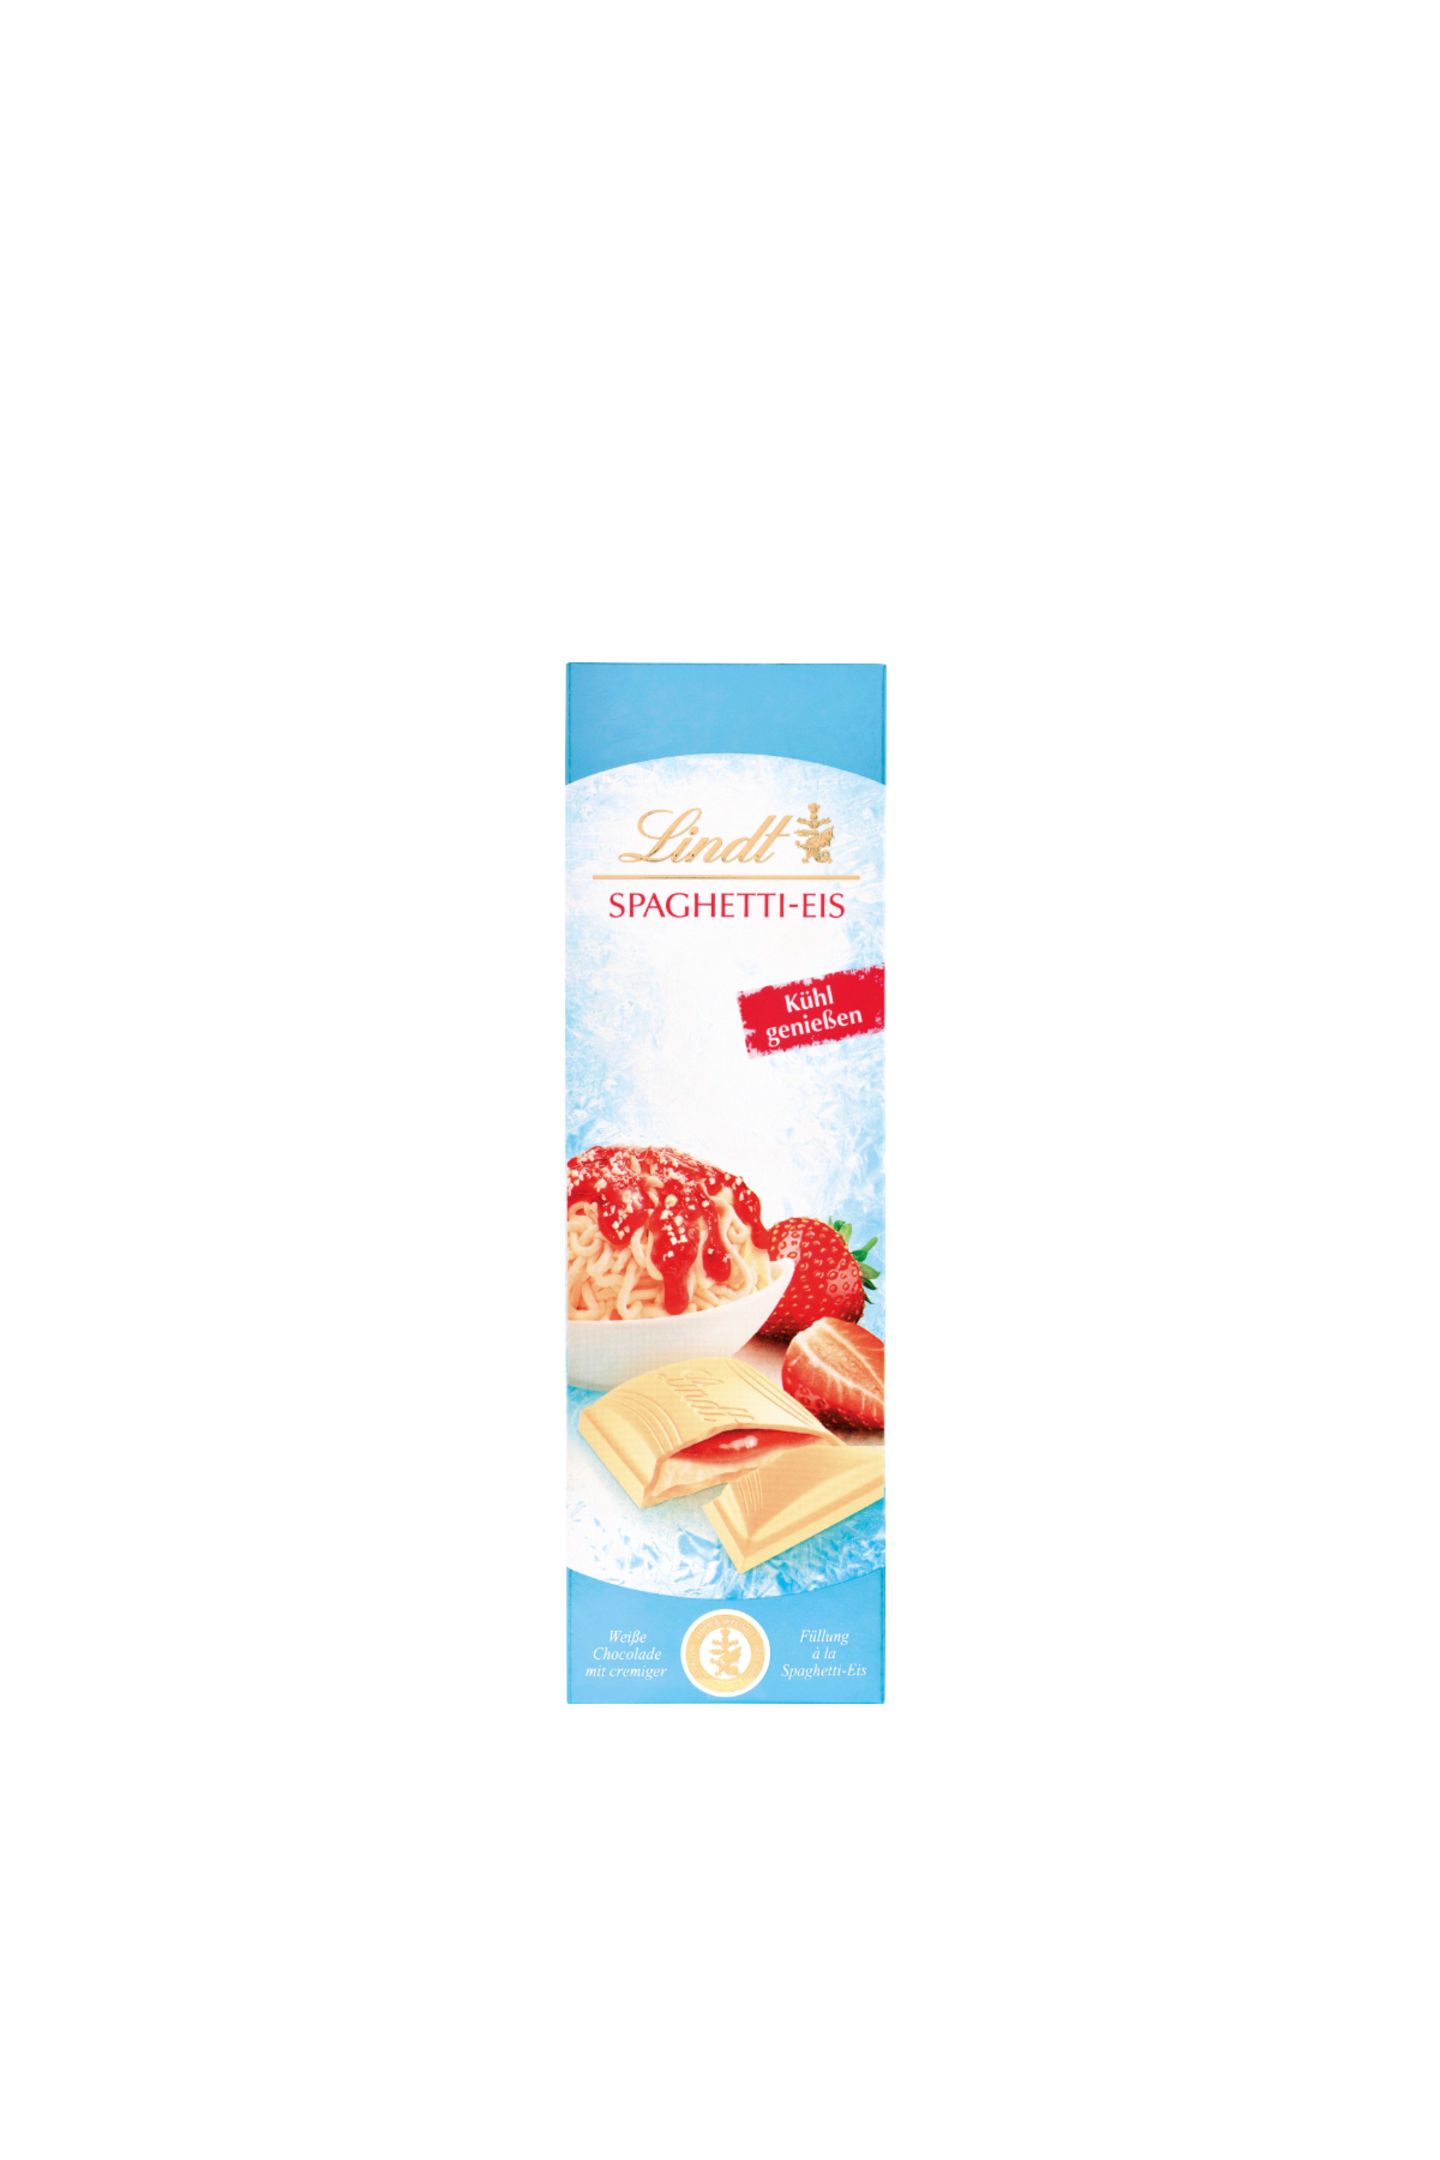 Retro-Flash Spaghetti-Eis gehört zu den echten Klassikern in der Eisdiele und zu unseren liebsten Kindheitserinnerungen. Im Schoko-Regal gibt es jetzt eine schöne Hommage für zuhause. Schokolade "Spaghetti-Eis" von Lindt, 2,40 Euro.